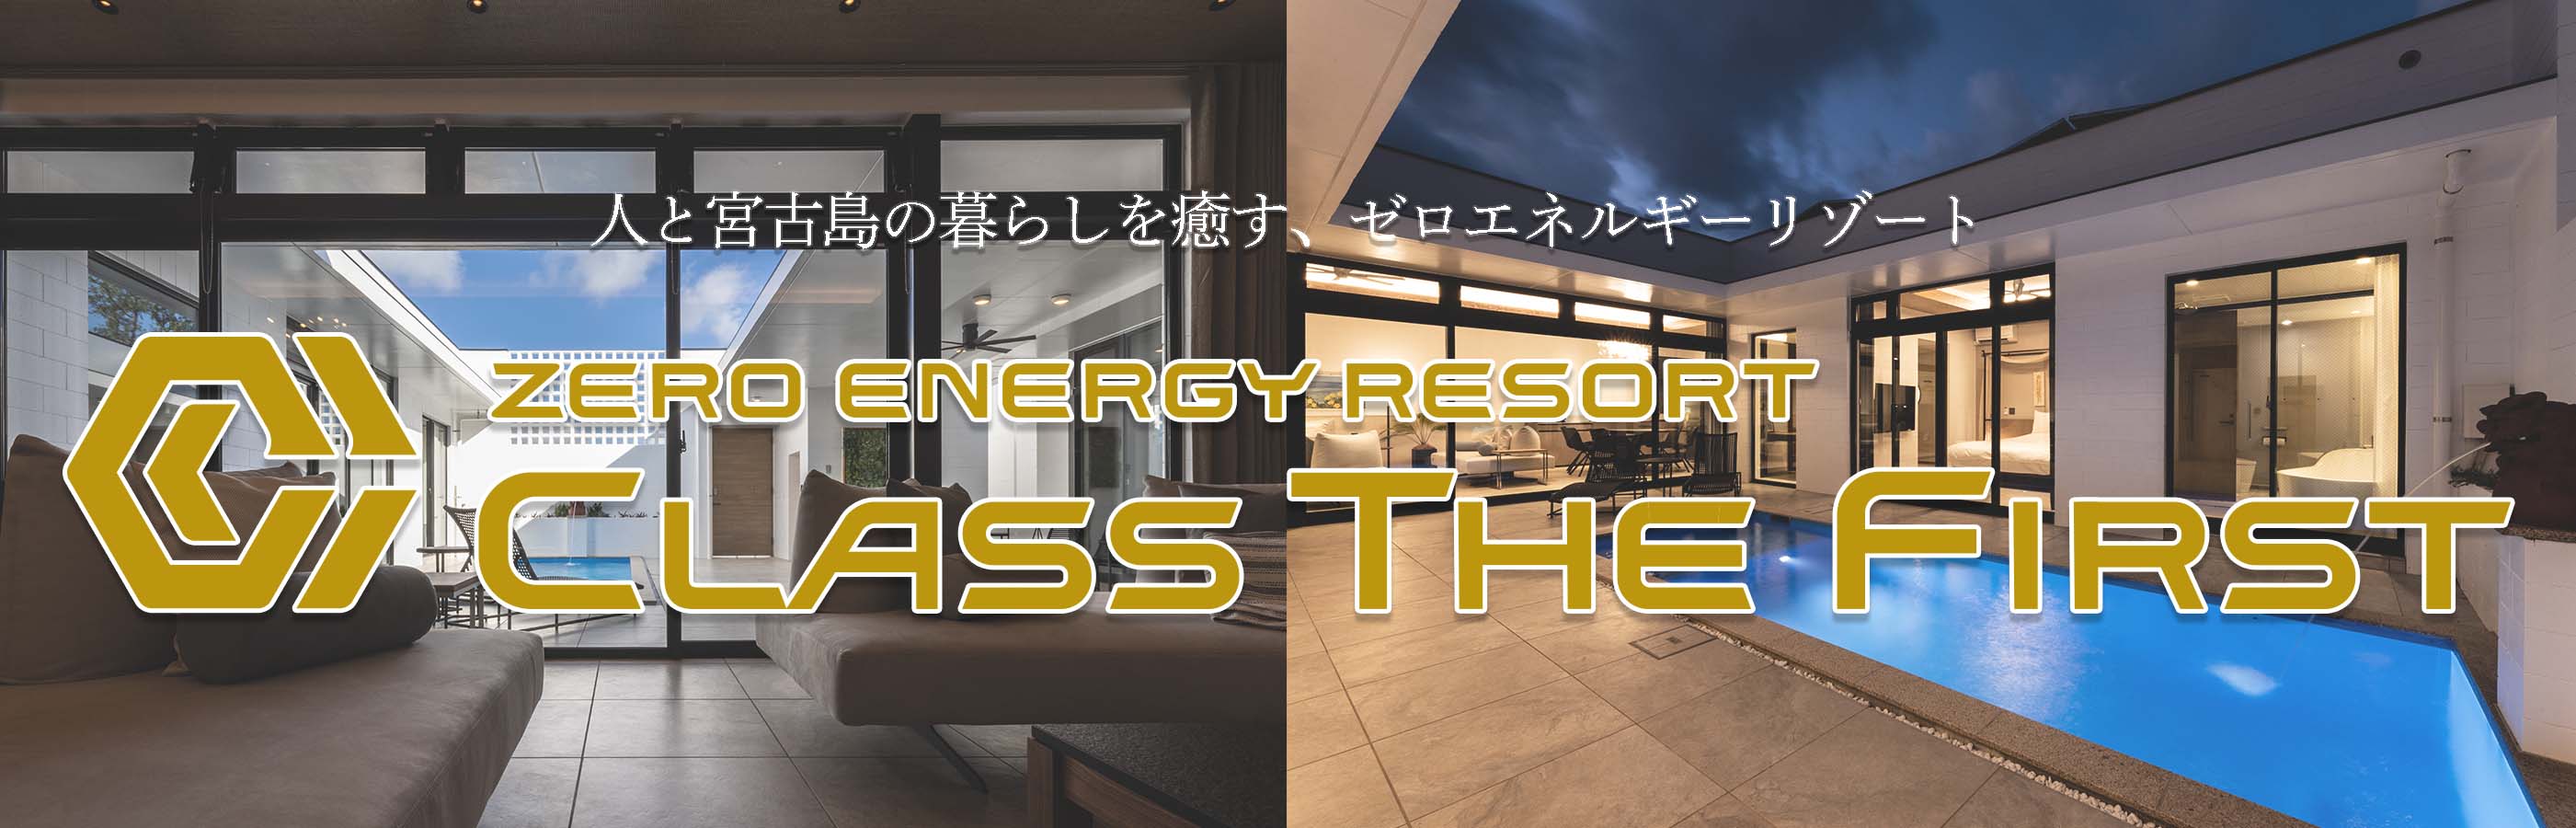 地球と人に優しいゼロエネルギーリゾートCLASS THE FIRST -クラス・ザ・ファースト- のホームページ。沖縄宮古島で最高の暮らしをご紹介します。